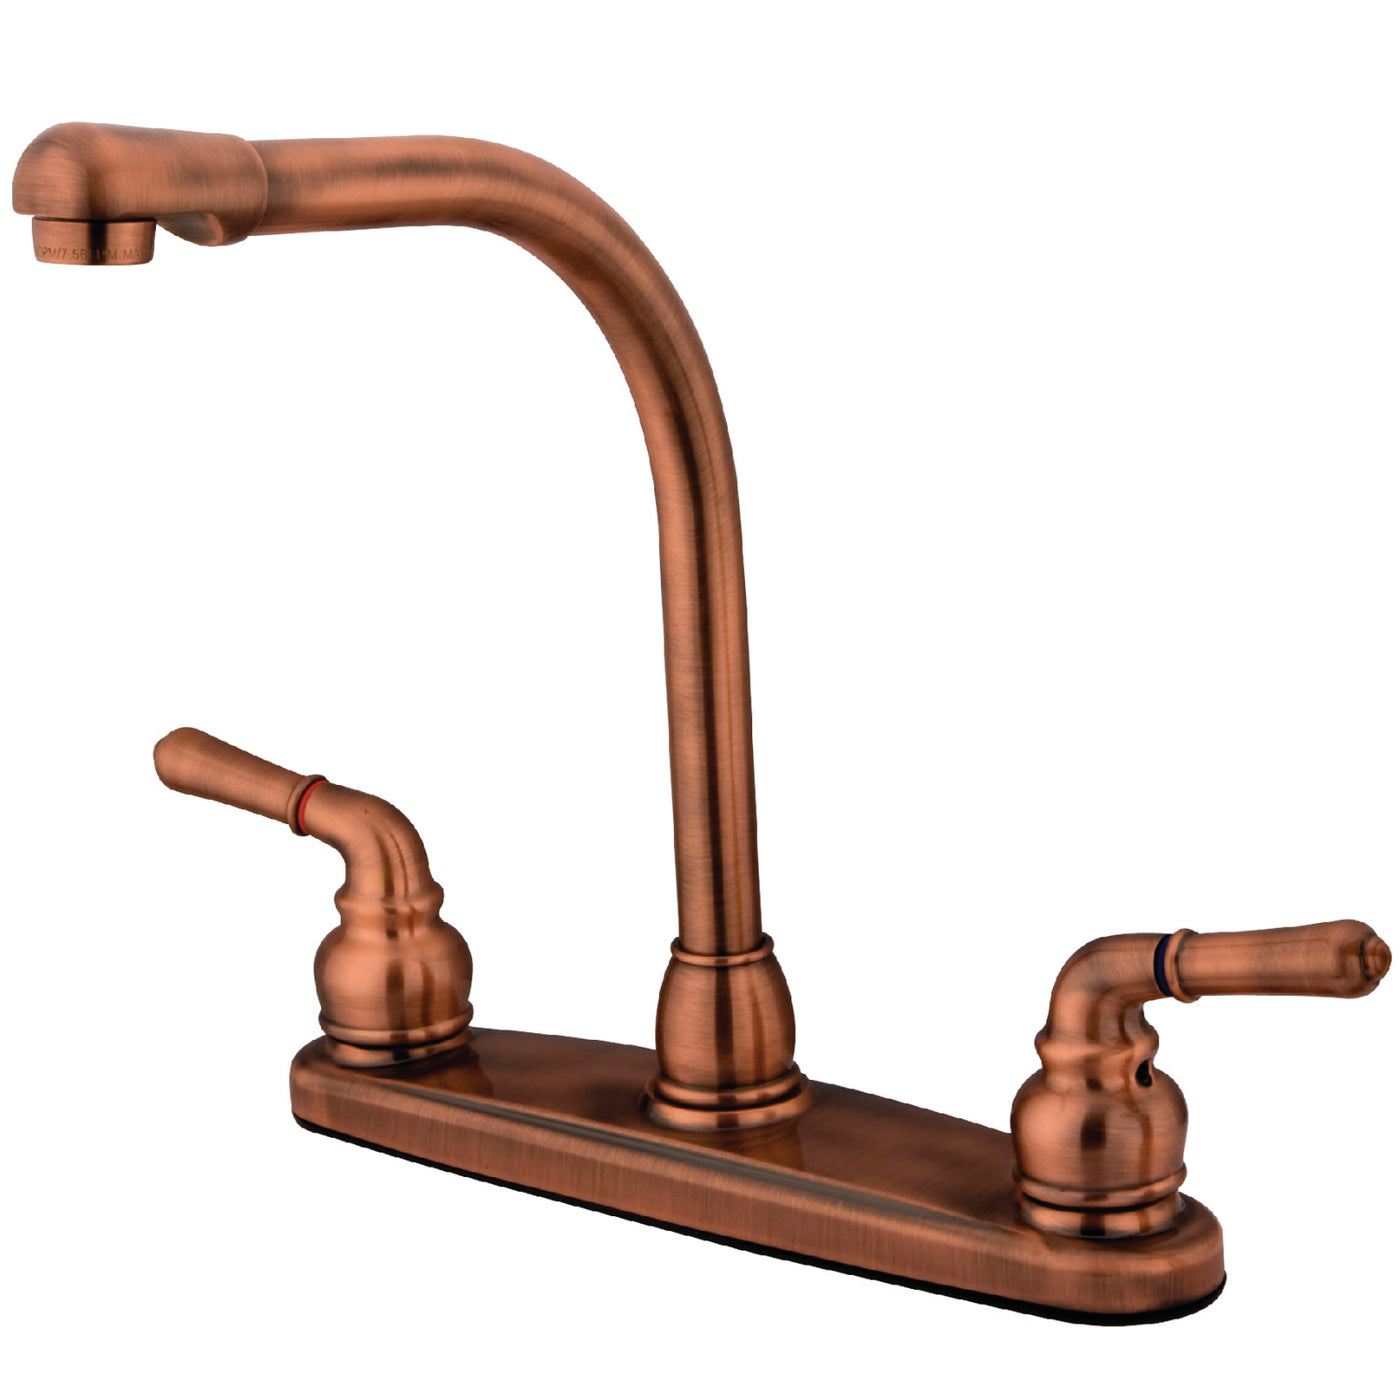 Elements of Design EB756LS Centerset Kitchen Faucet, Antique Copper